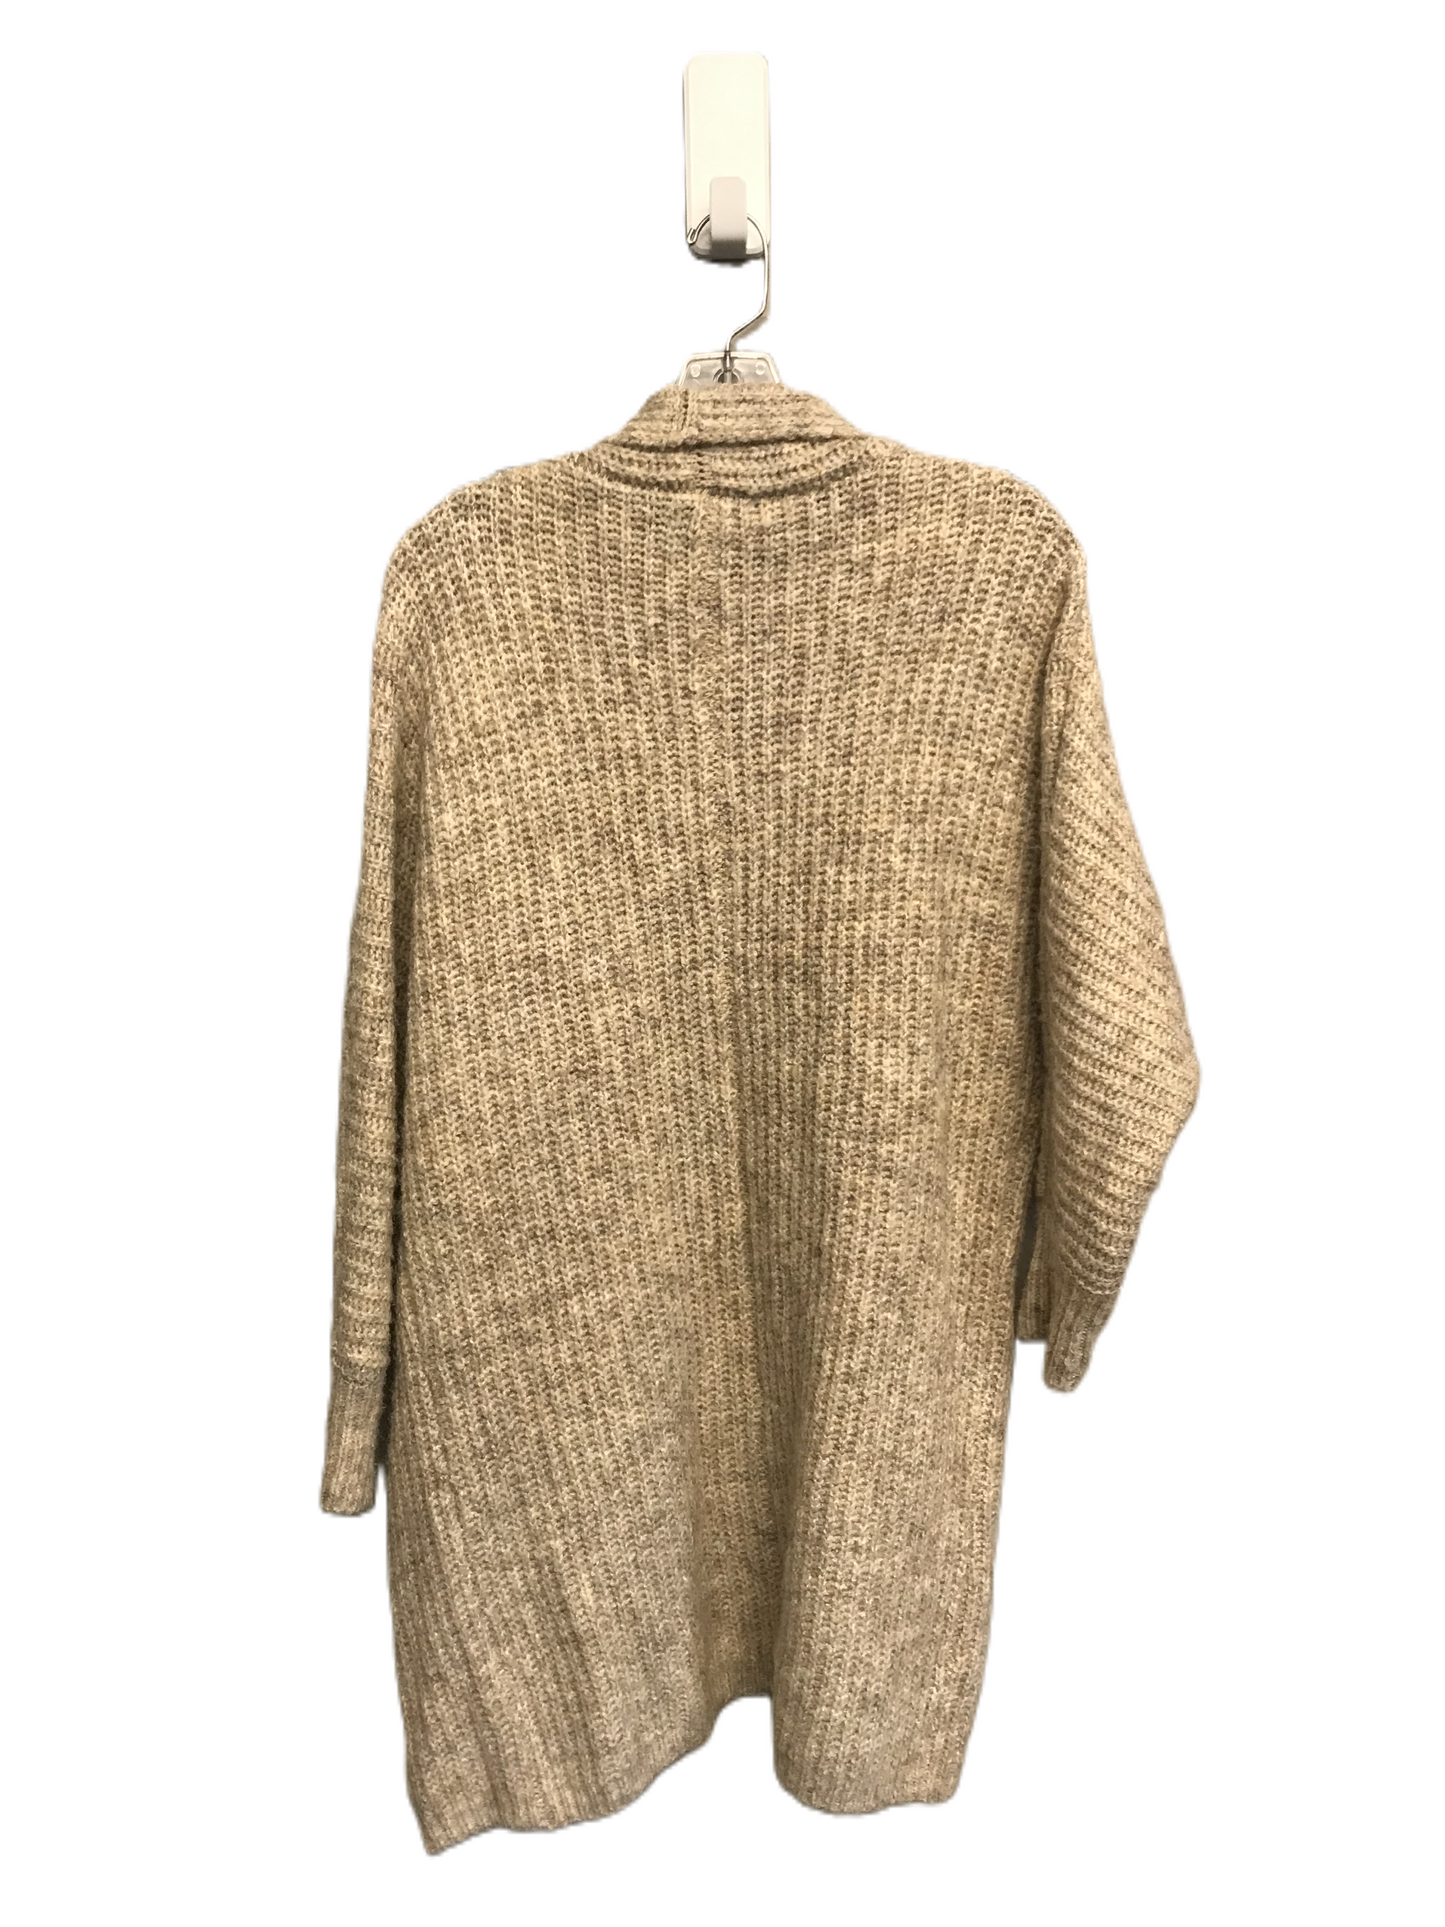 Beige Sweater Cardigan By William Rast, Size: Xs